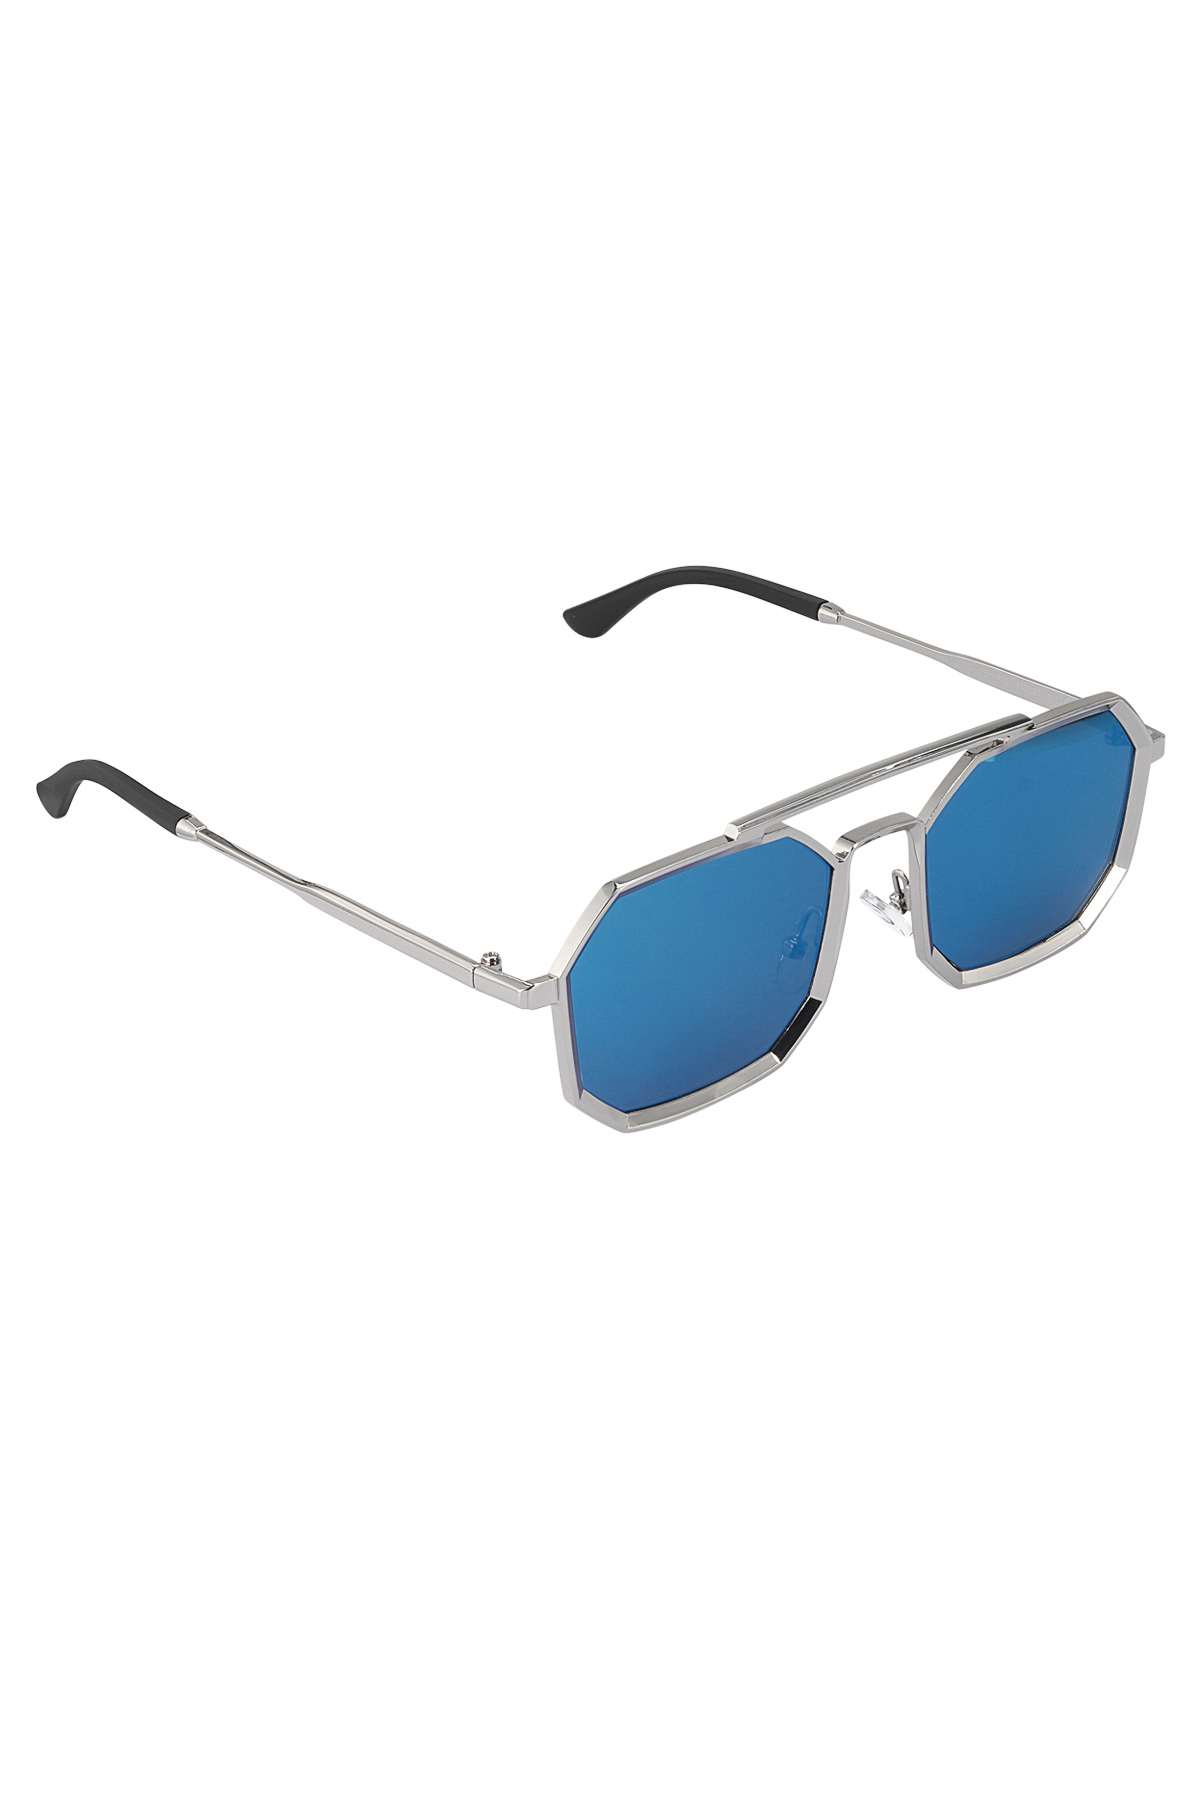 Güneş gözlüğü LuminLens - mavi gümüş